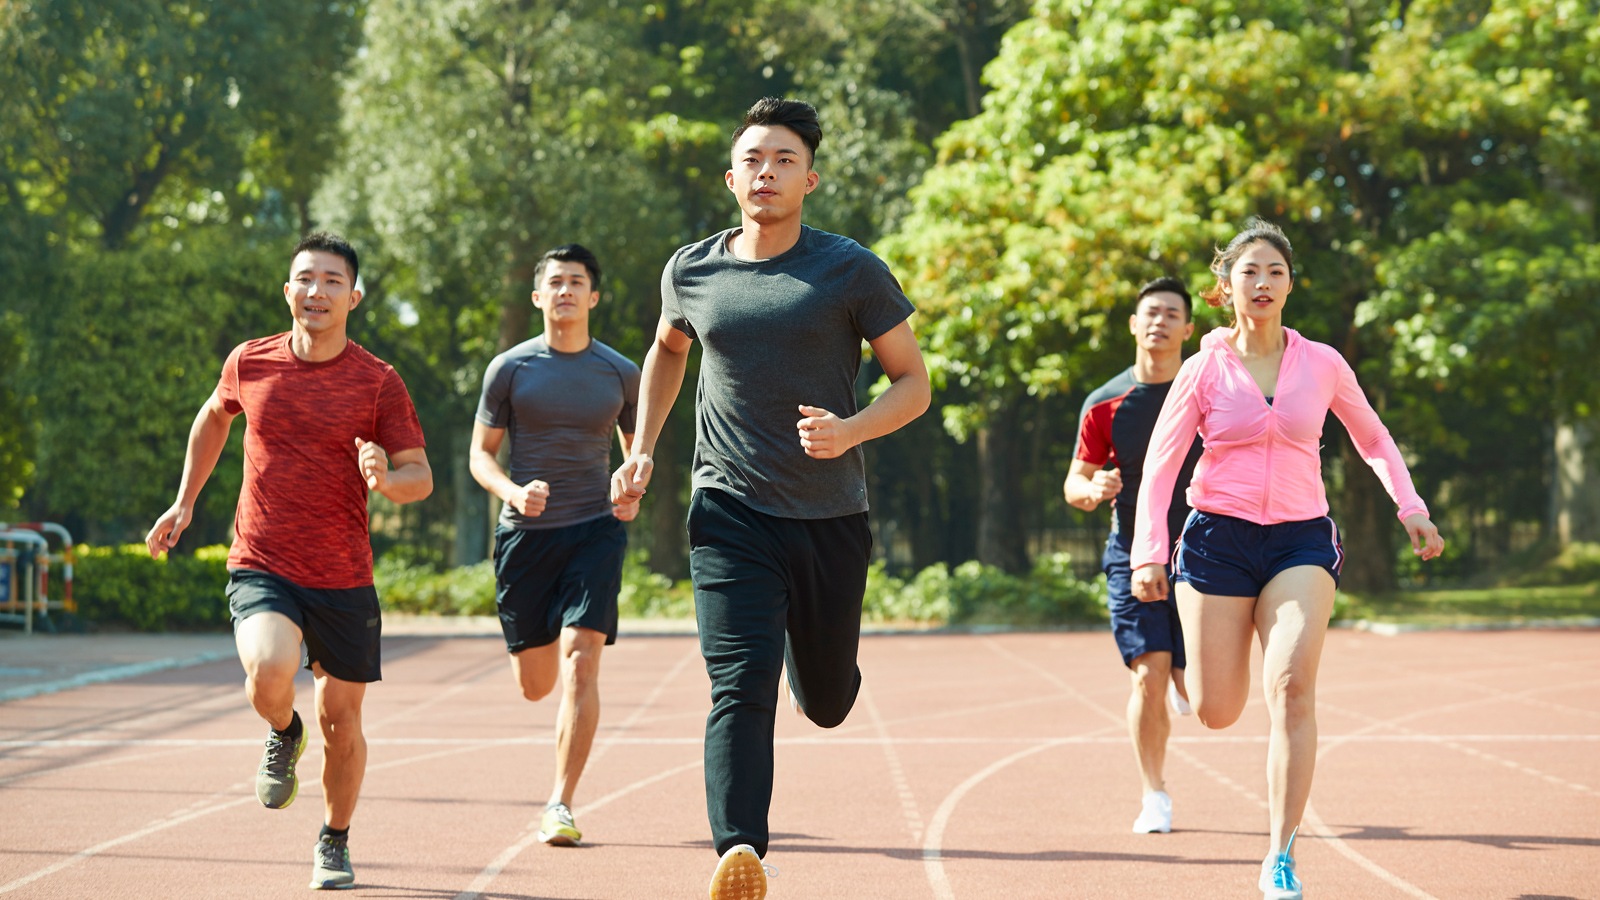 Dinh dưỡng đóng vai trò rất lớn trong việc thành bại của một người chơi thường xuyên luyện tập thể dục, thể thao. Vì thế, chế độ dinh dưỡng cho người chạy bộ cũng rất quan trọng để giúp bạn đạt được kết quả luyện tập mong muốn